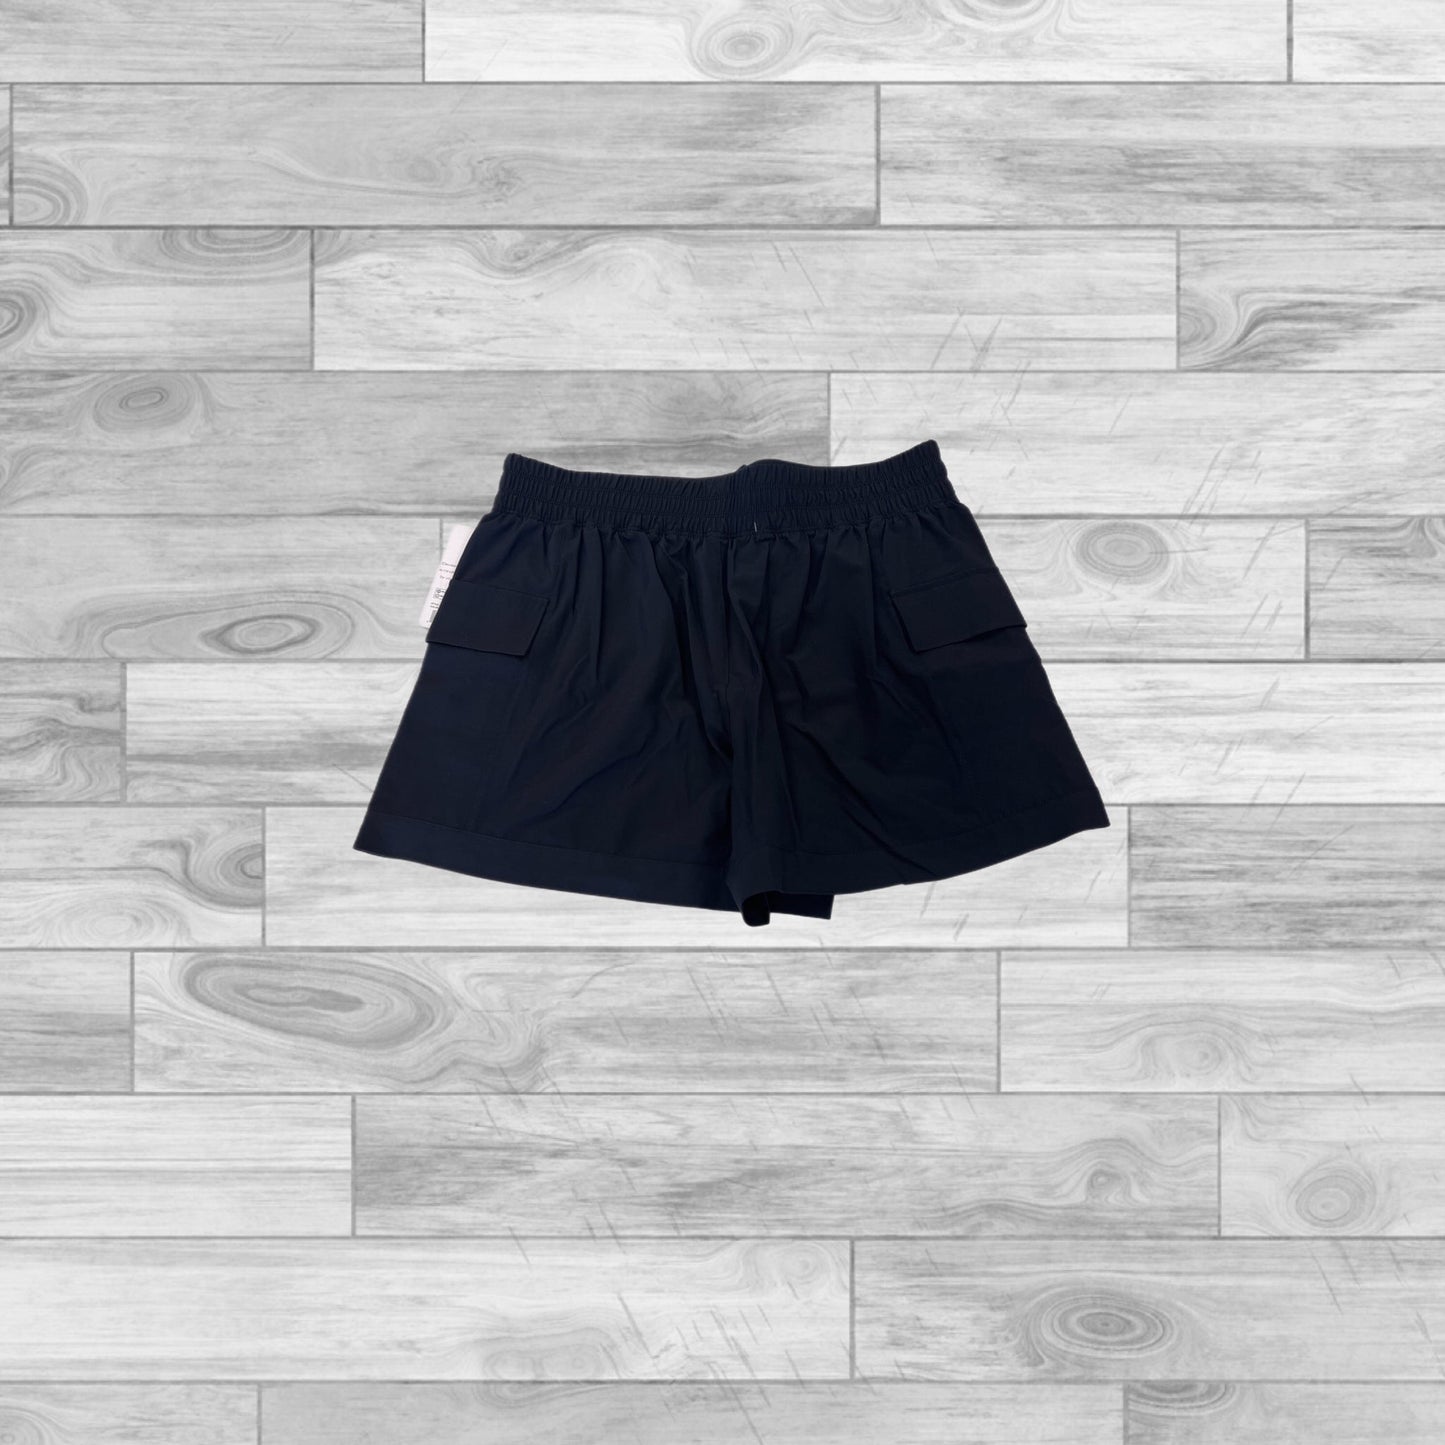 Black Shorts Apana, Size M